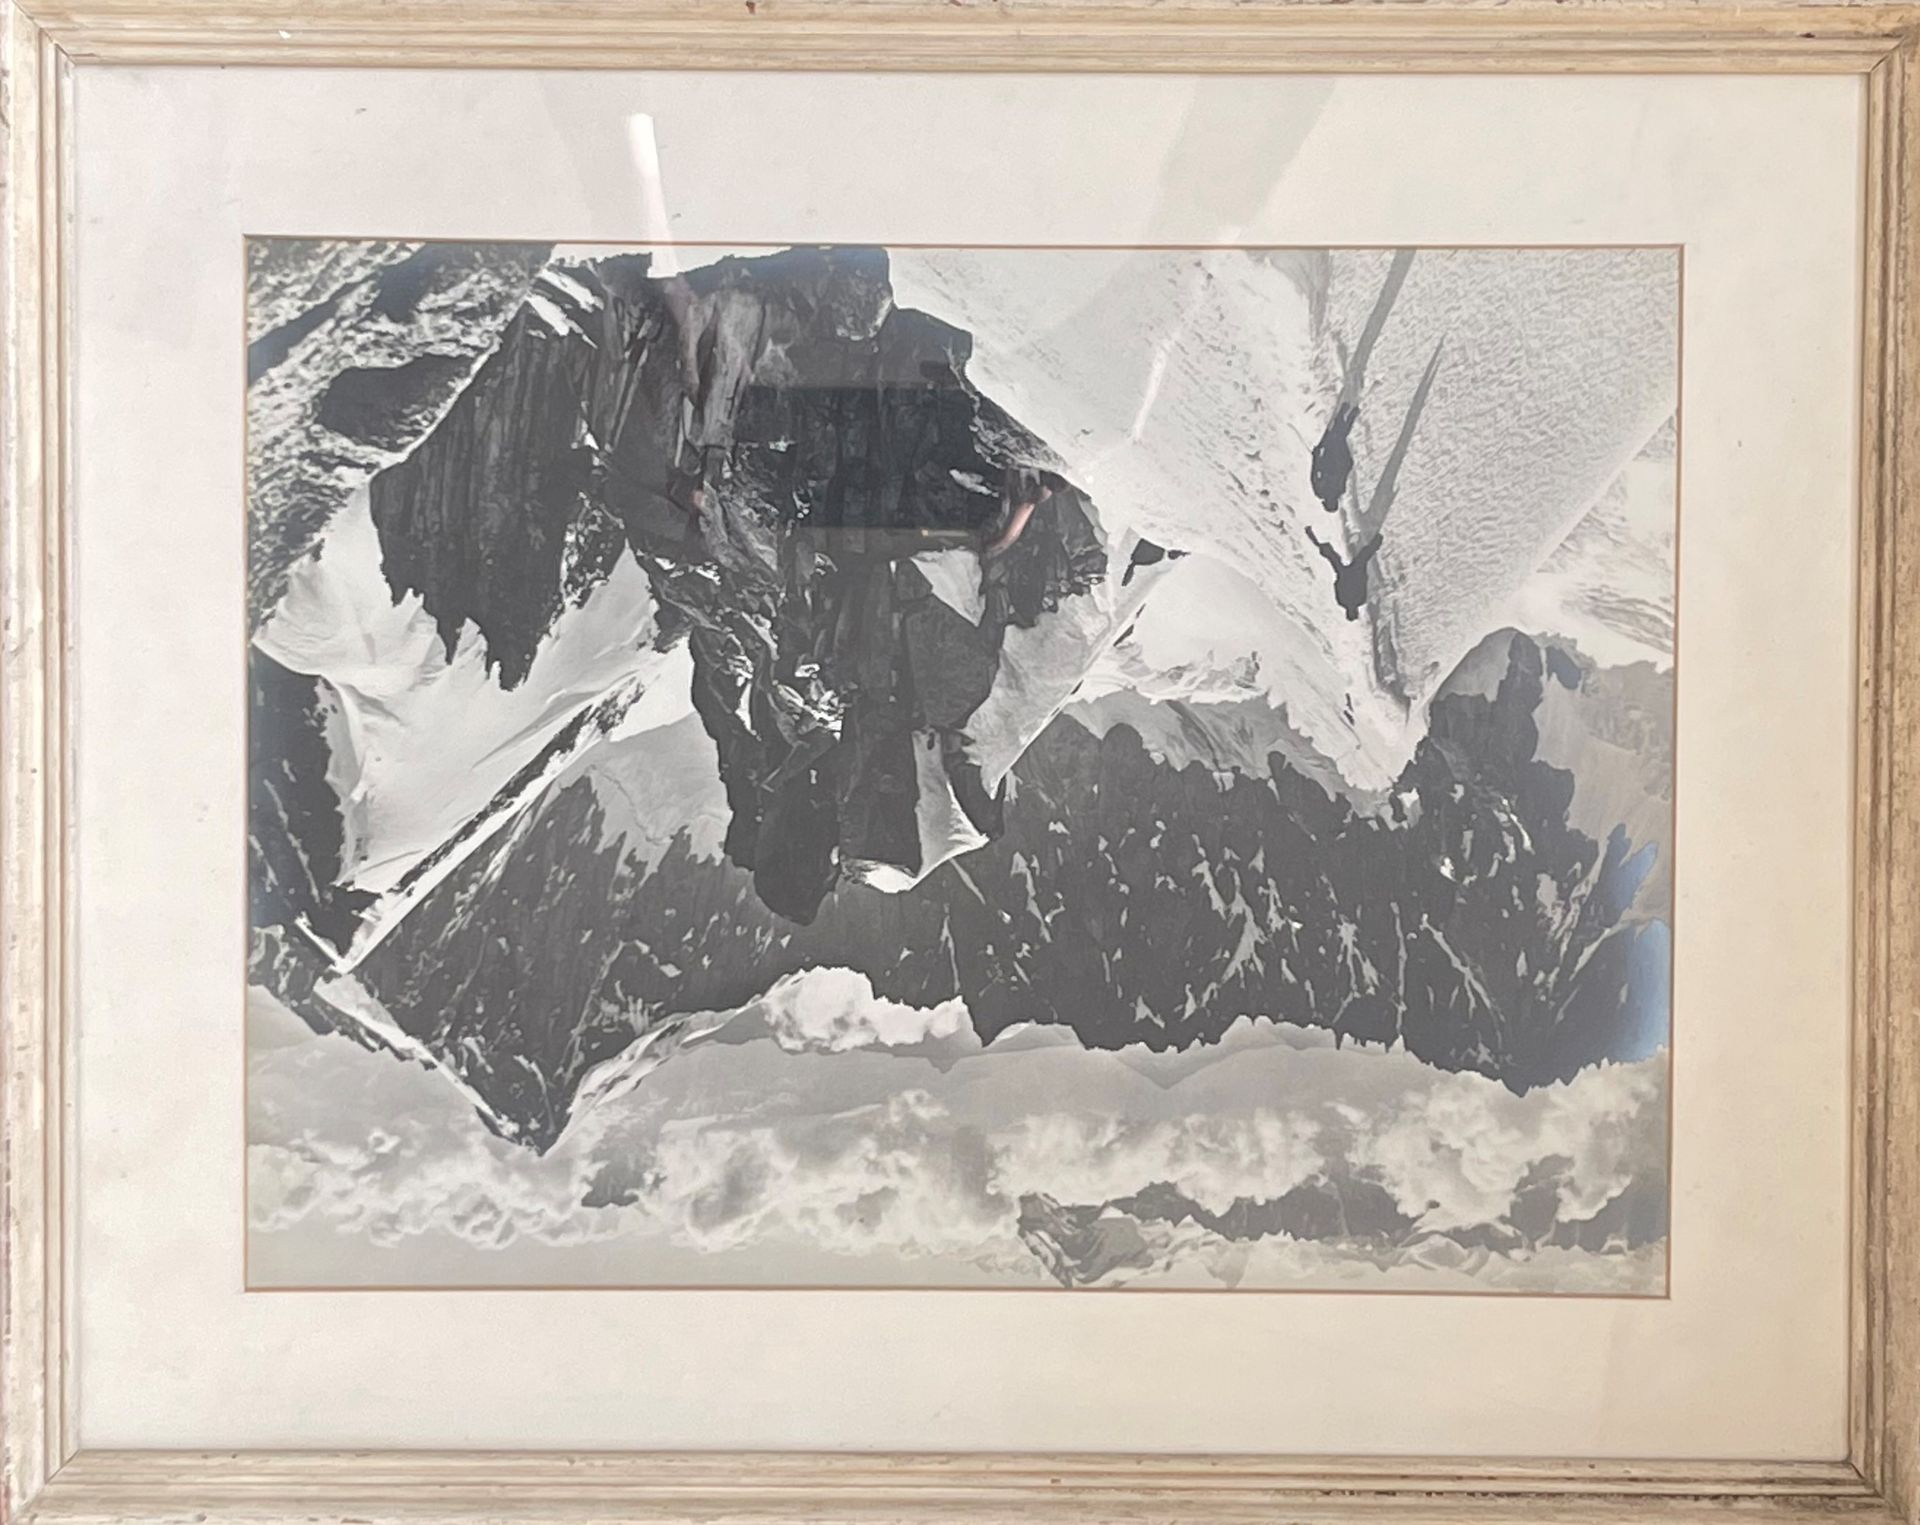 Null 乔治二世-塔伊拉兹(1900-1975)

"越过直线"。

银色印刷品，背面有印章

« G.TAIRRAZ"，标题为。

29 x 39厘米。